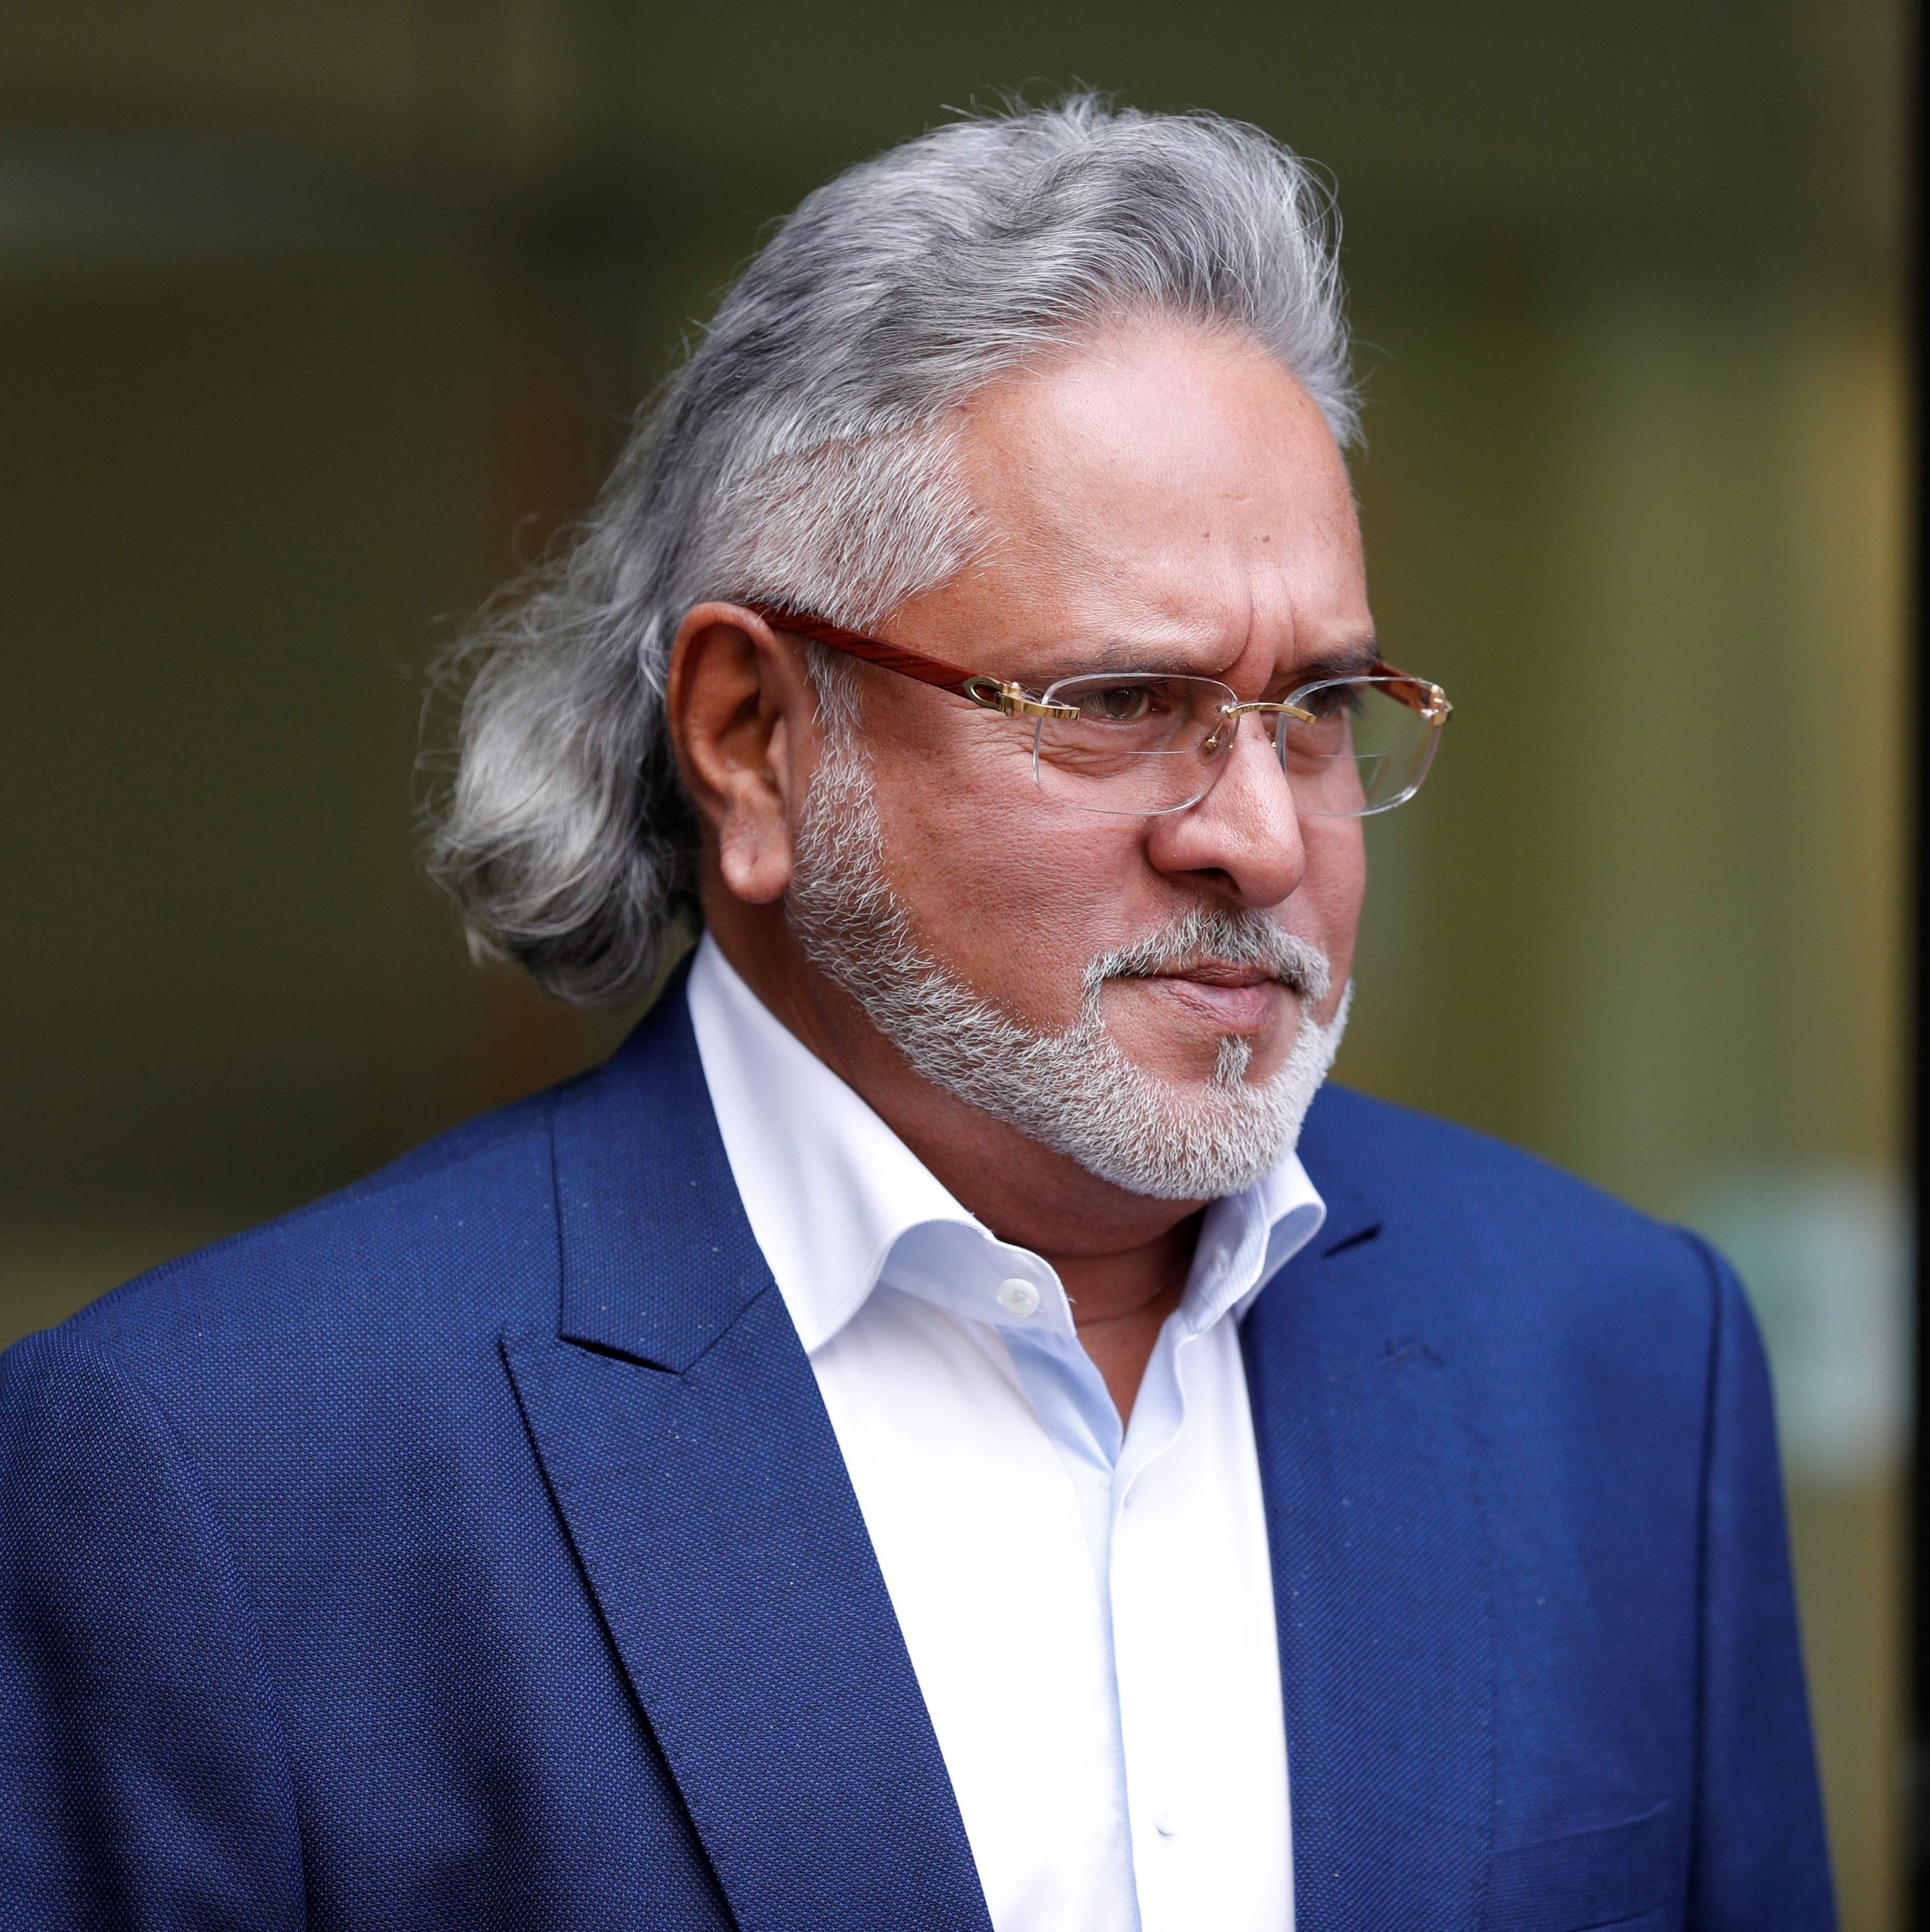 Antigo dono da equipe Force India é condenado à prisão